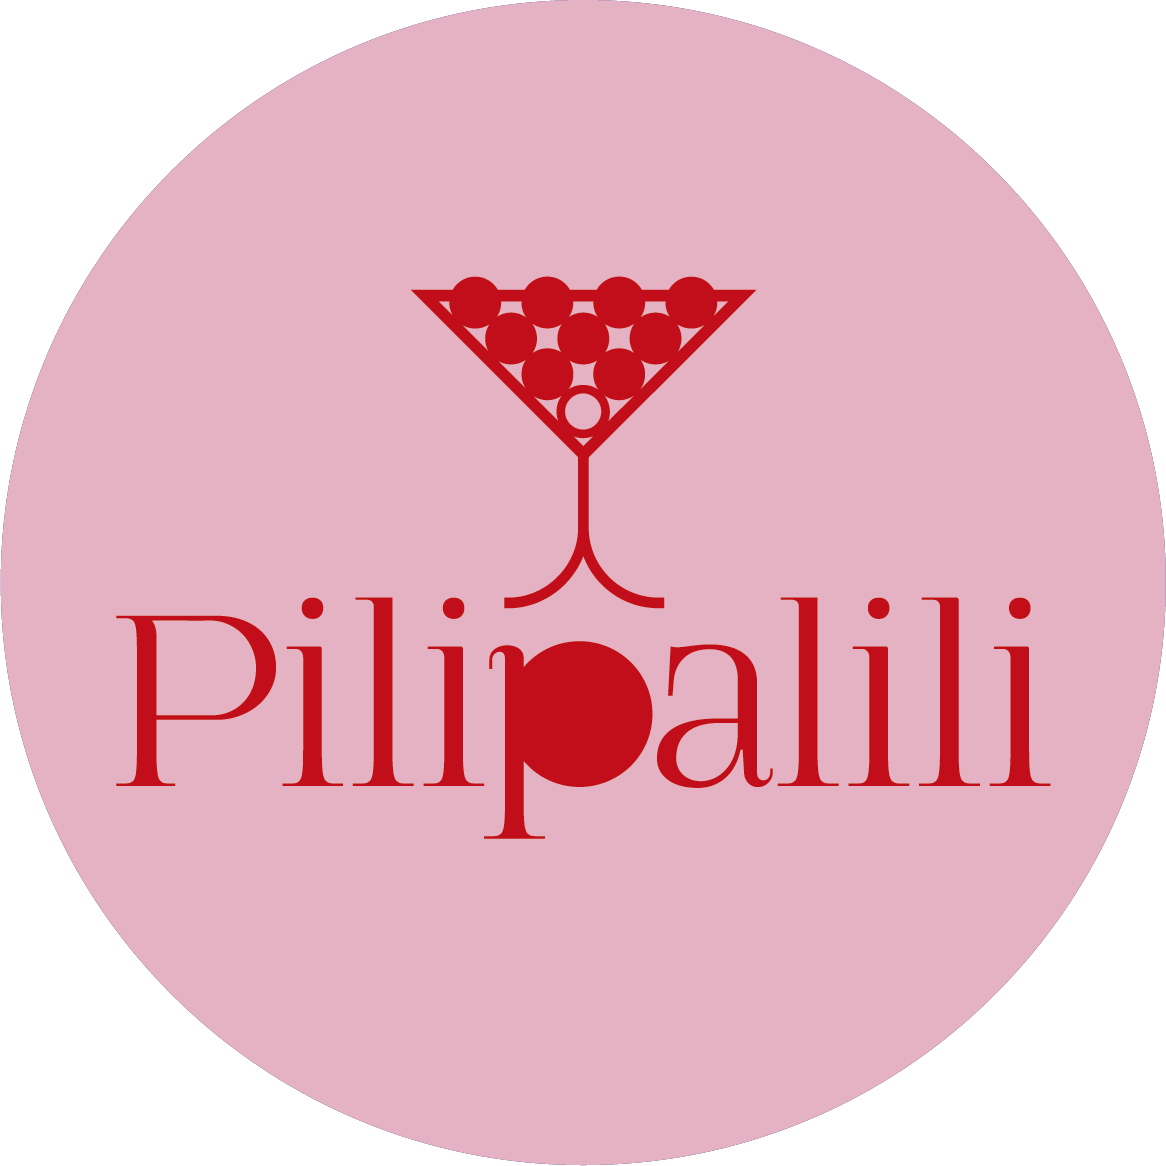 PiliPalili logo pink